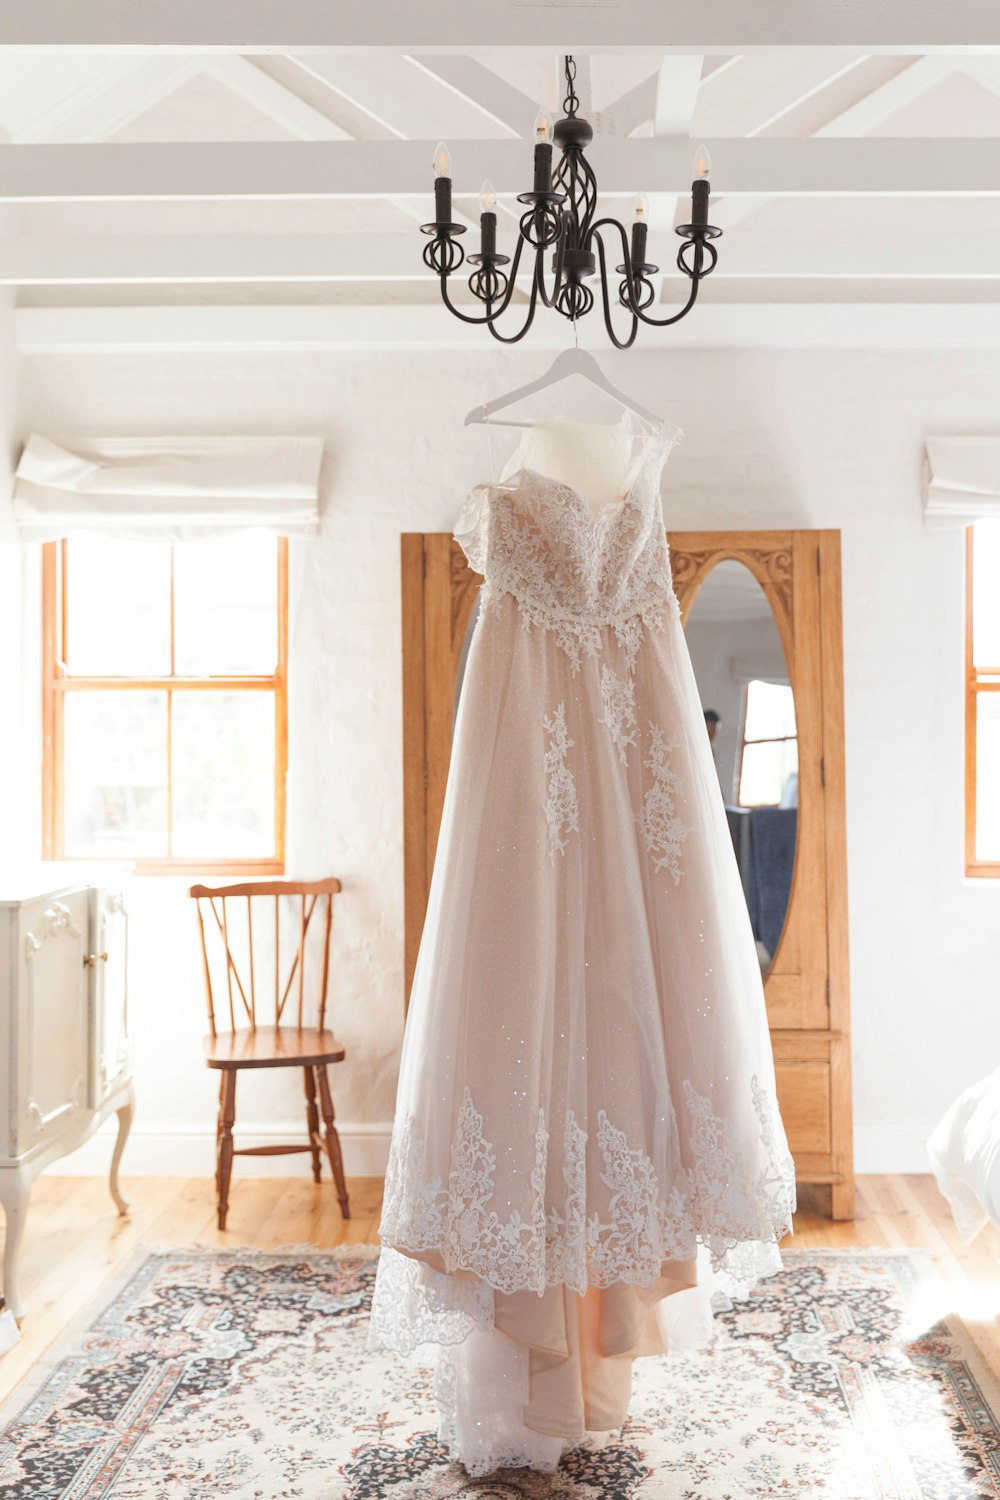 hanged white lace sleeveless wedding dress